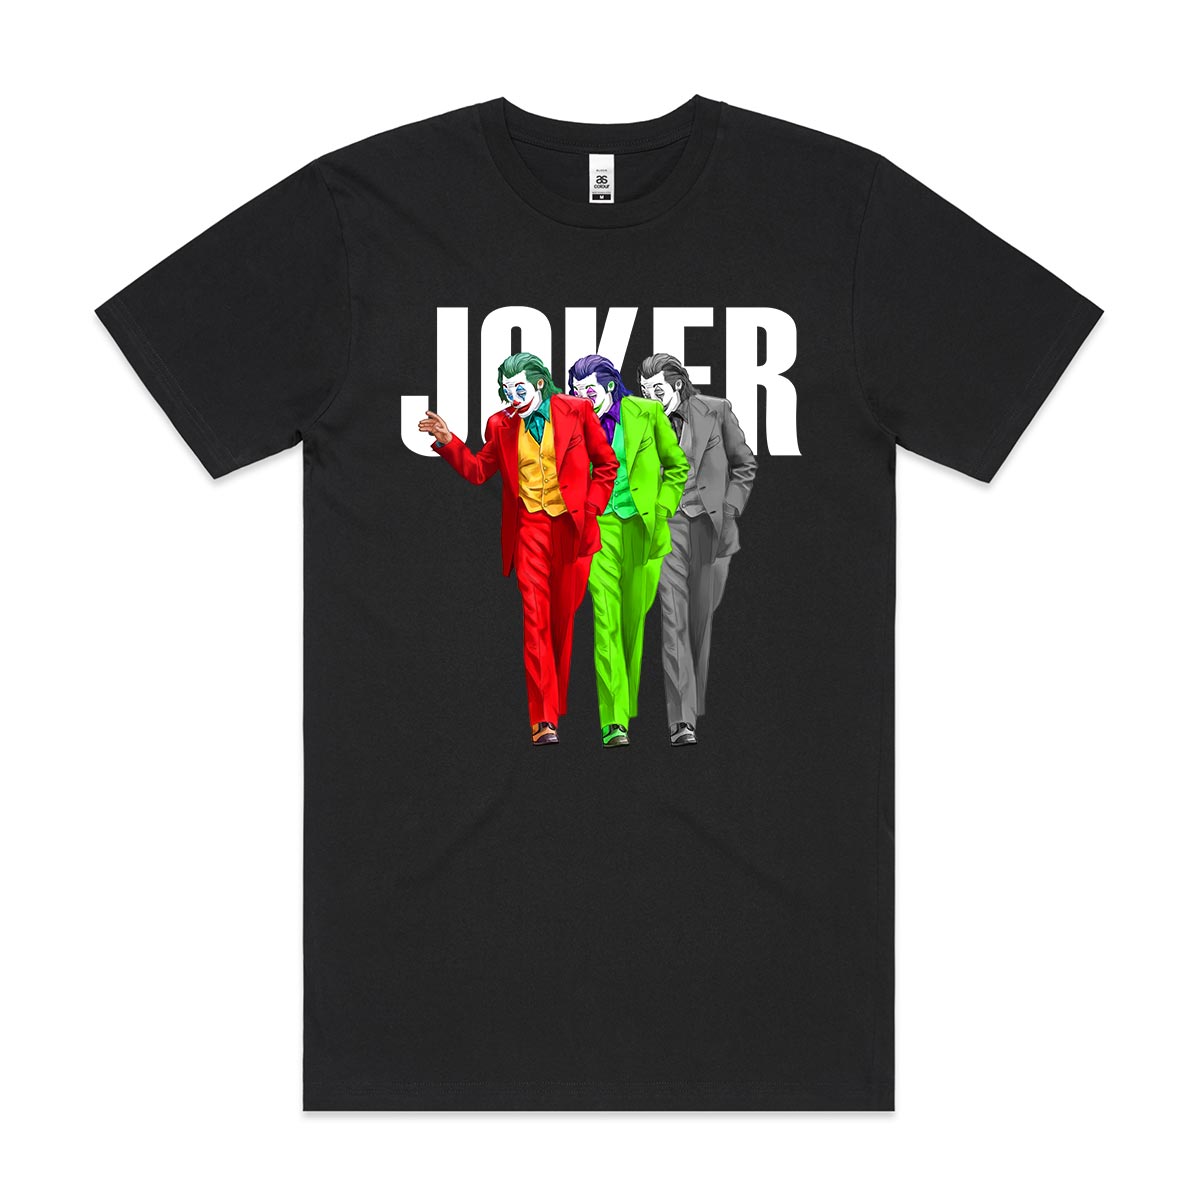 Joker 2019 Ver2 T-Shirt Joker Tee